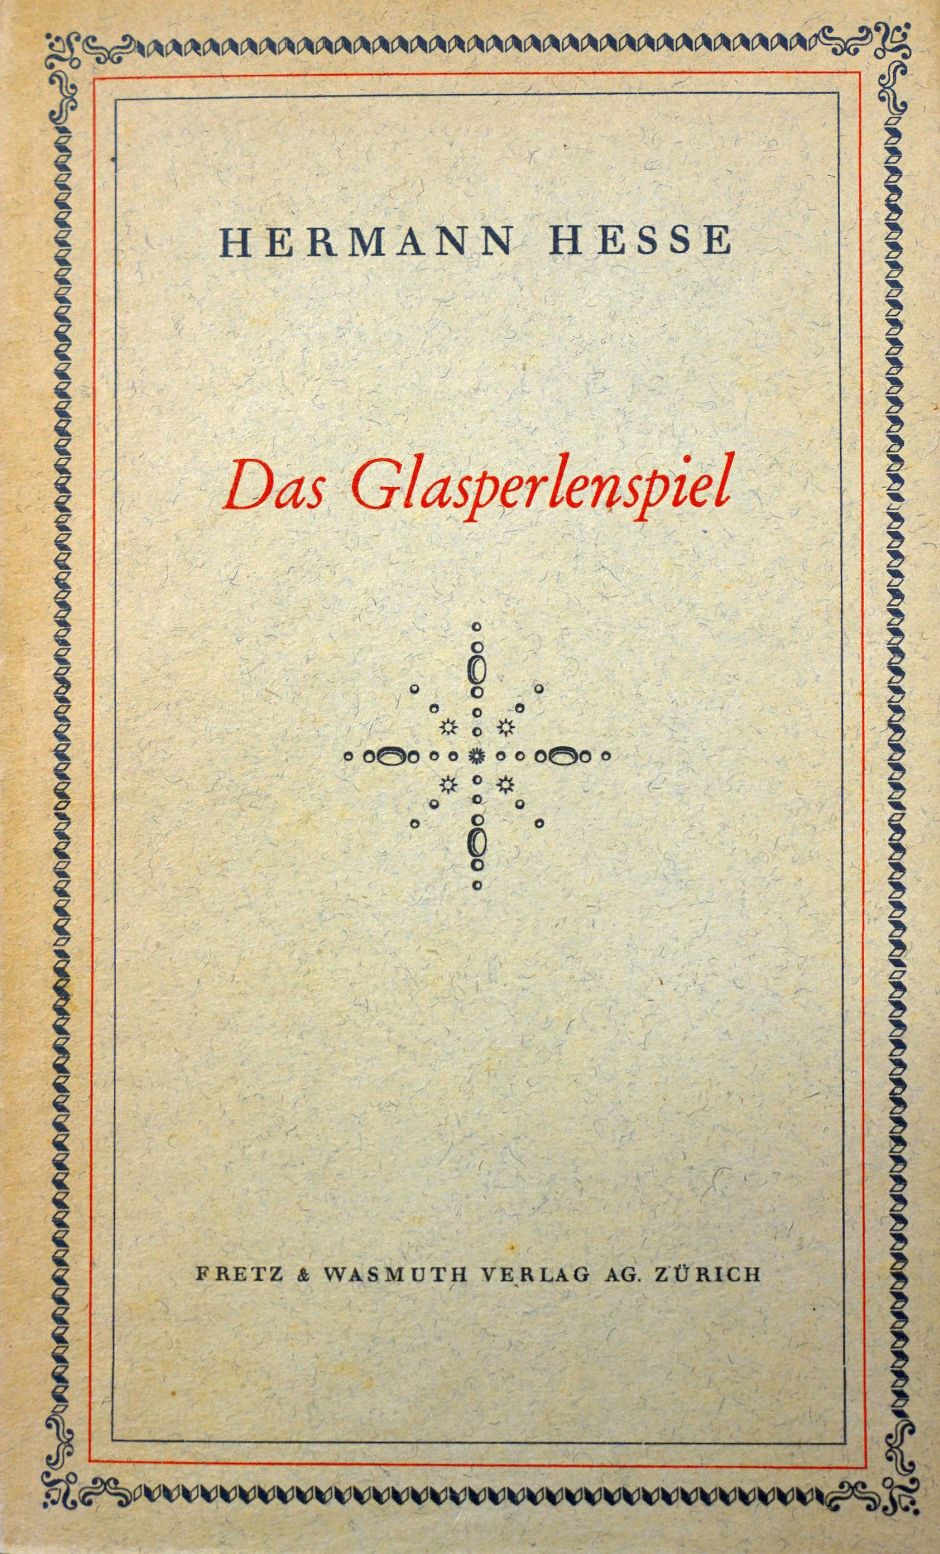 Lot 3158, Auction  115, Hesse, Hermann, Das Glasperlenspiel